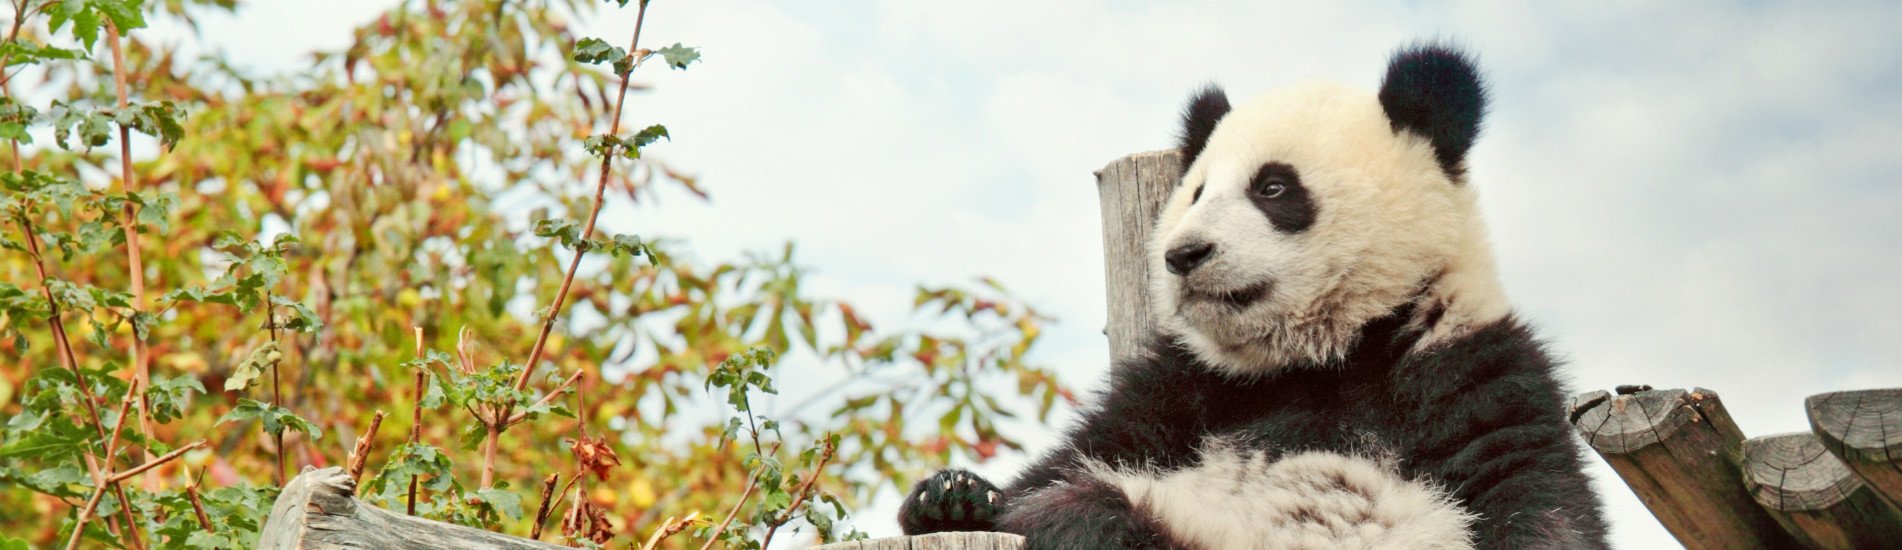 Une journée de programme de bénévolat des pandas à Dujiangyan